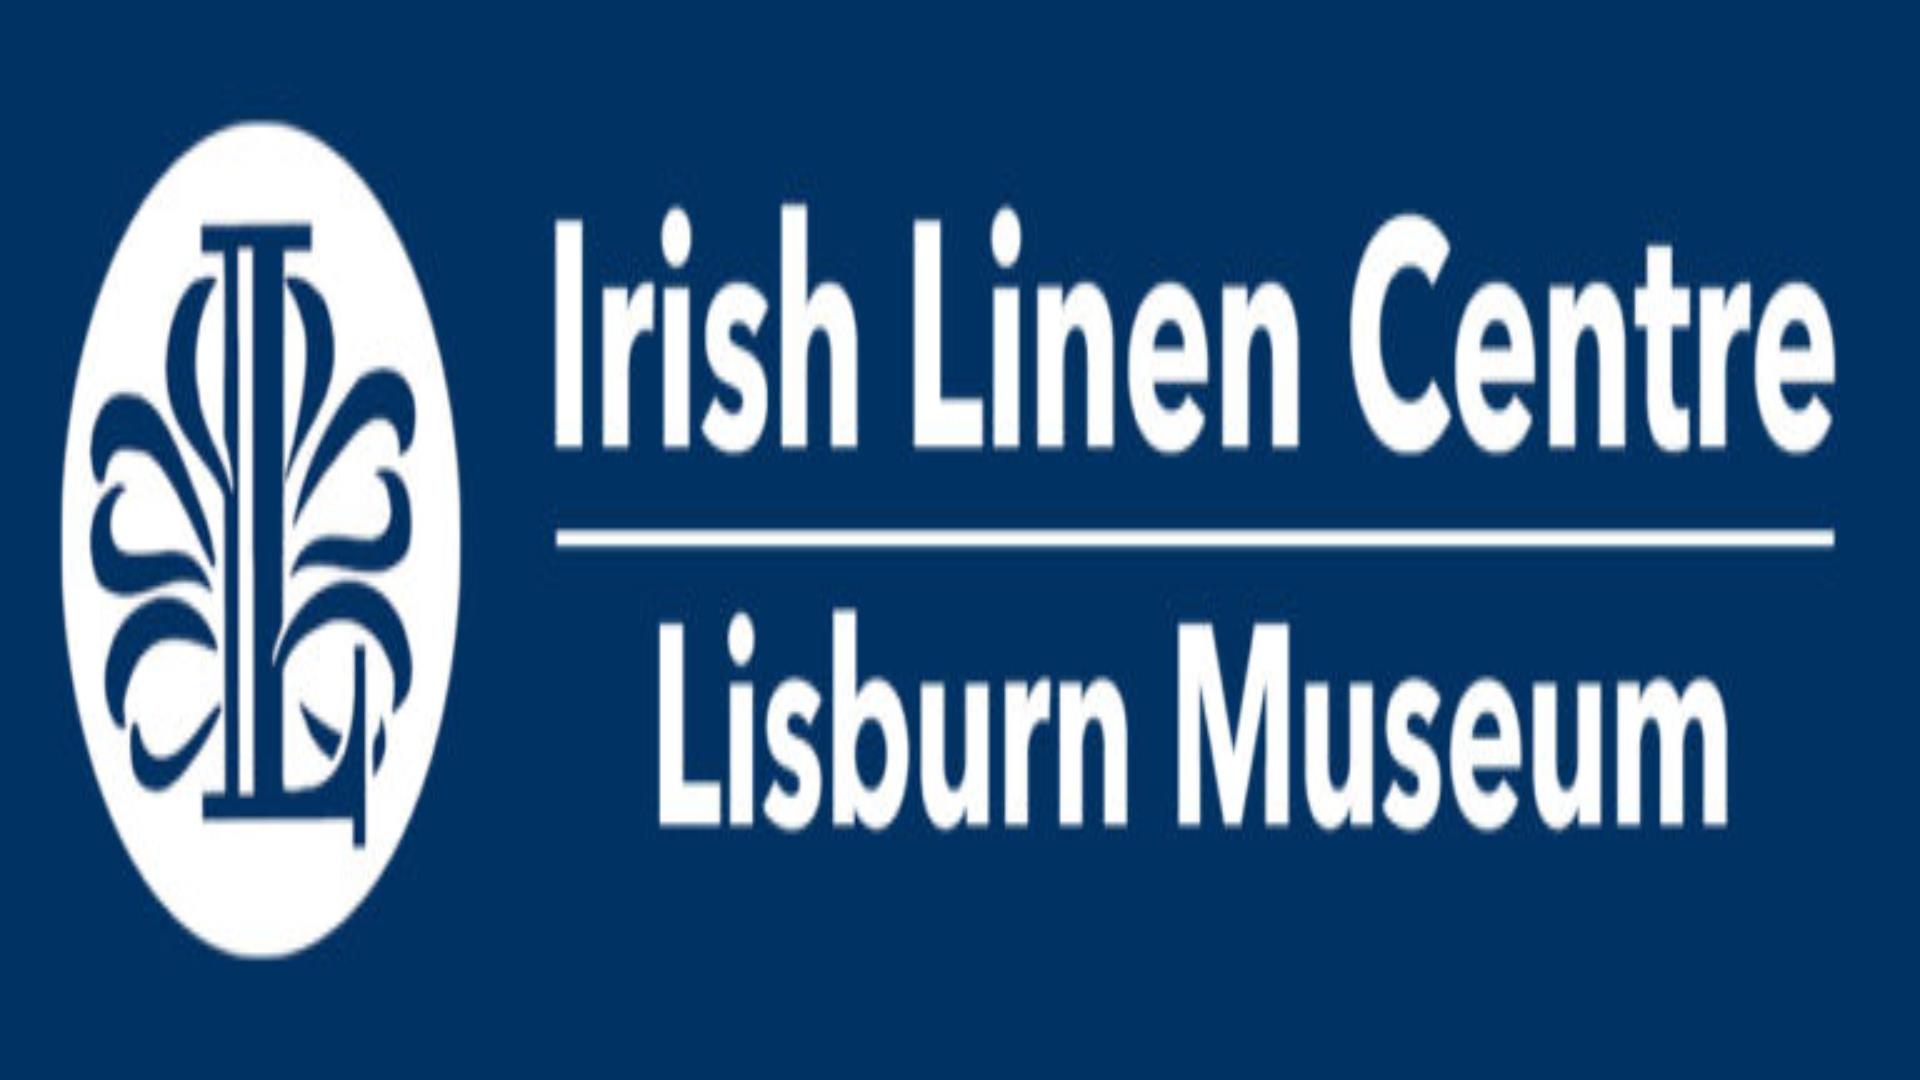 Logo for the Irish Linen Centre & Lisburn Museum